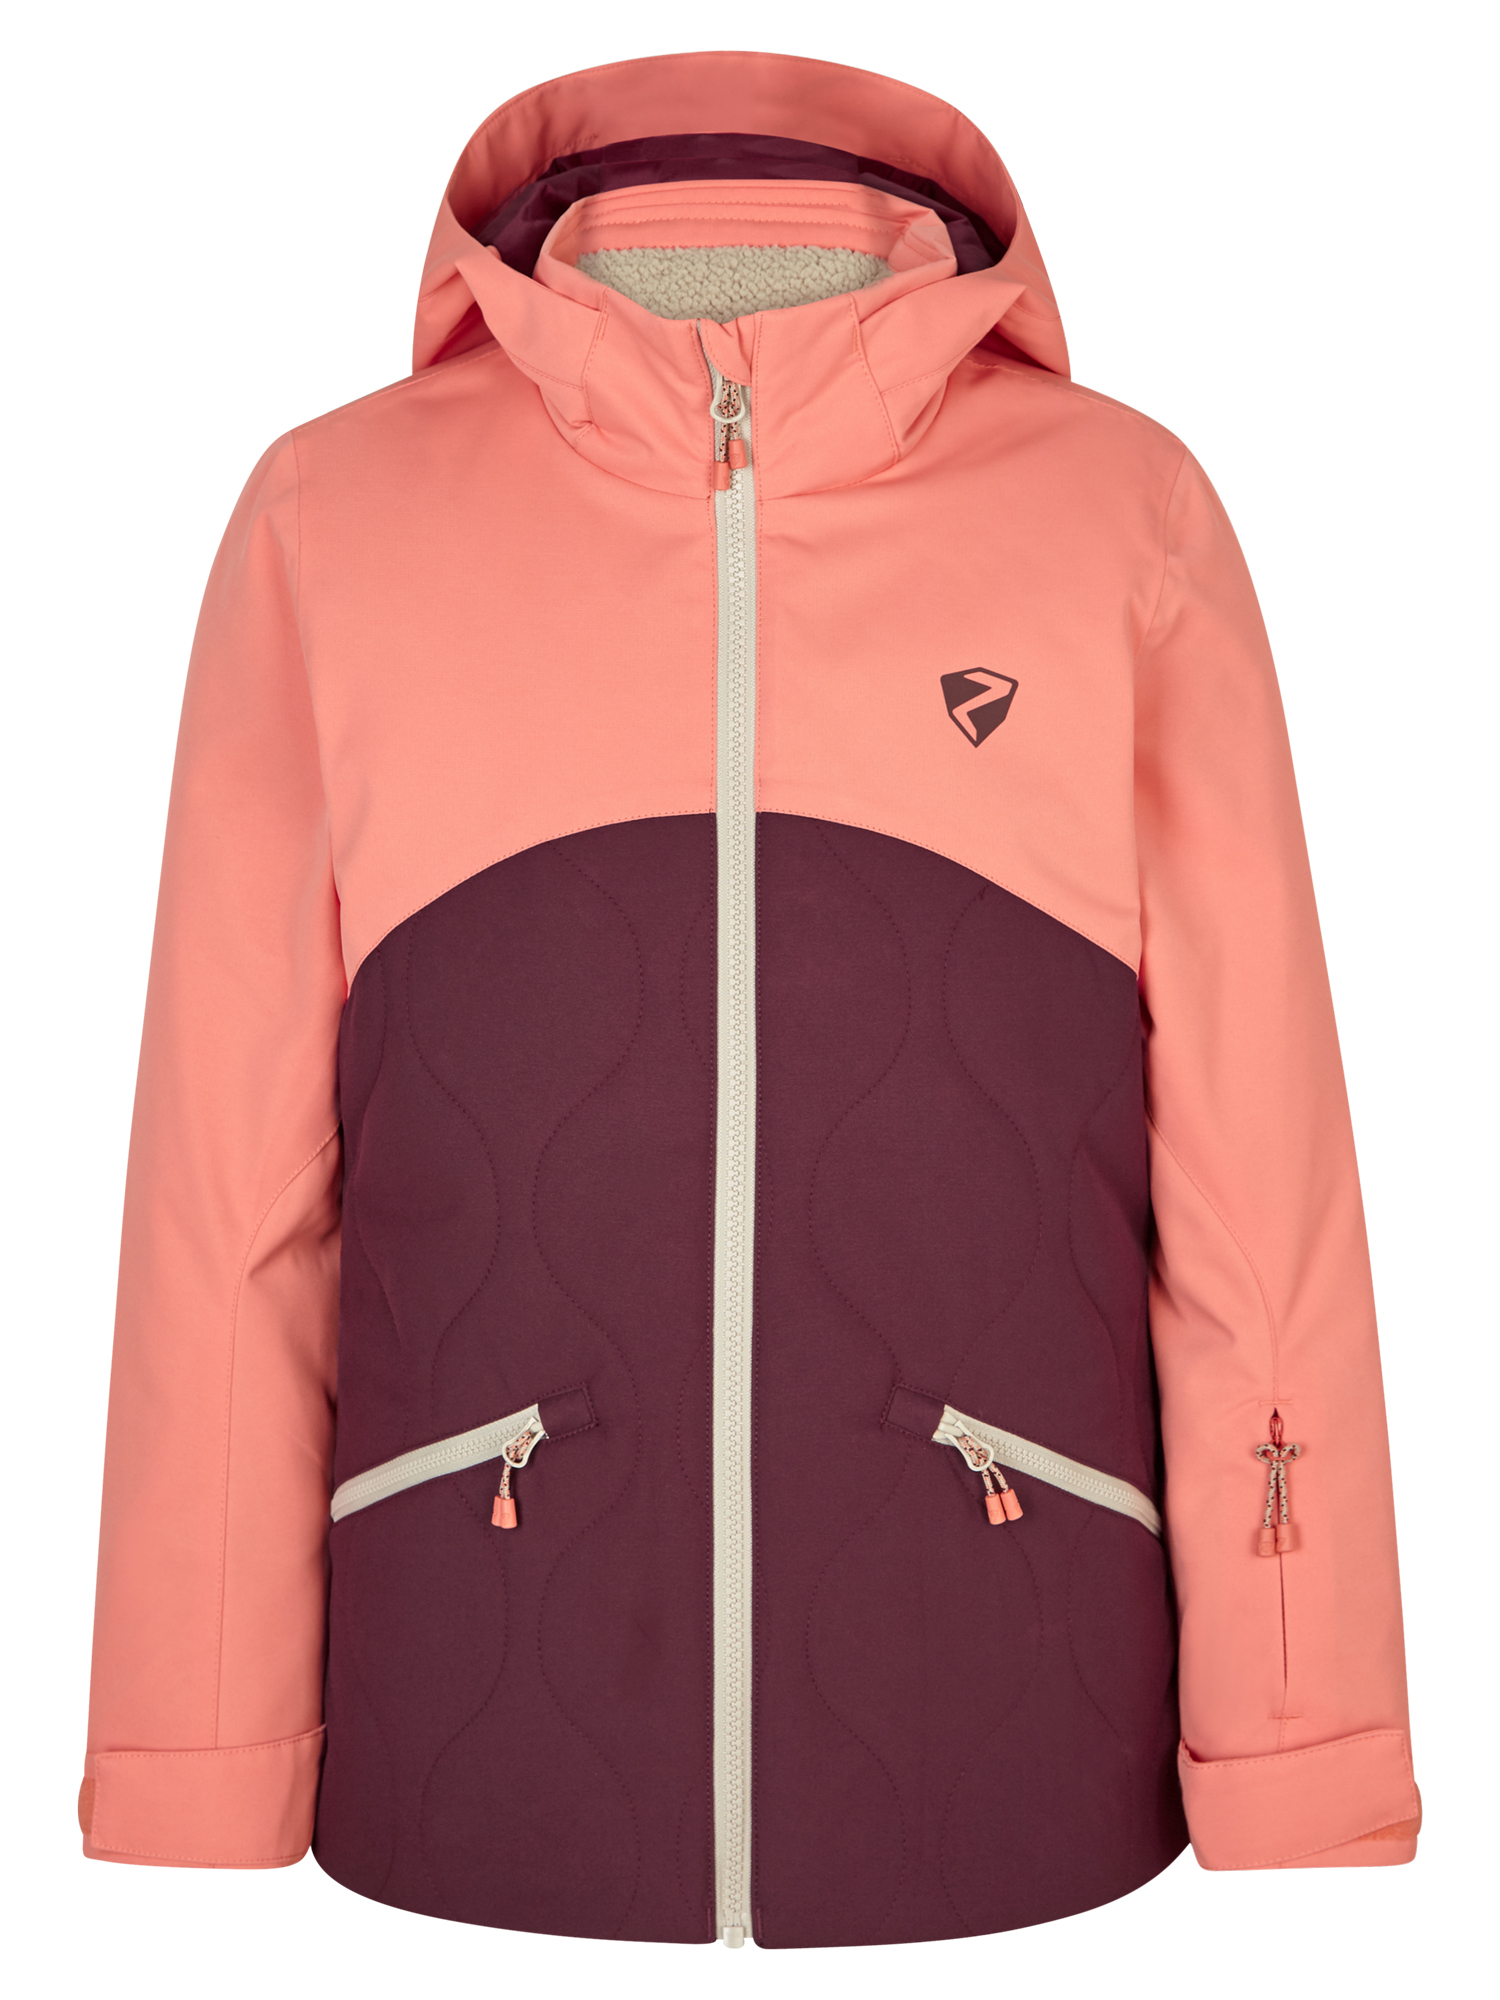 Ziener AYLA jun (jacket ski) velvet red online kaufen | Sportjacken